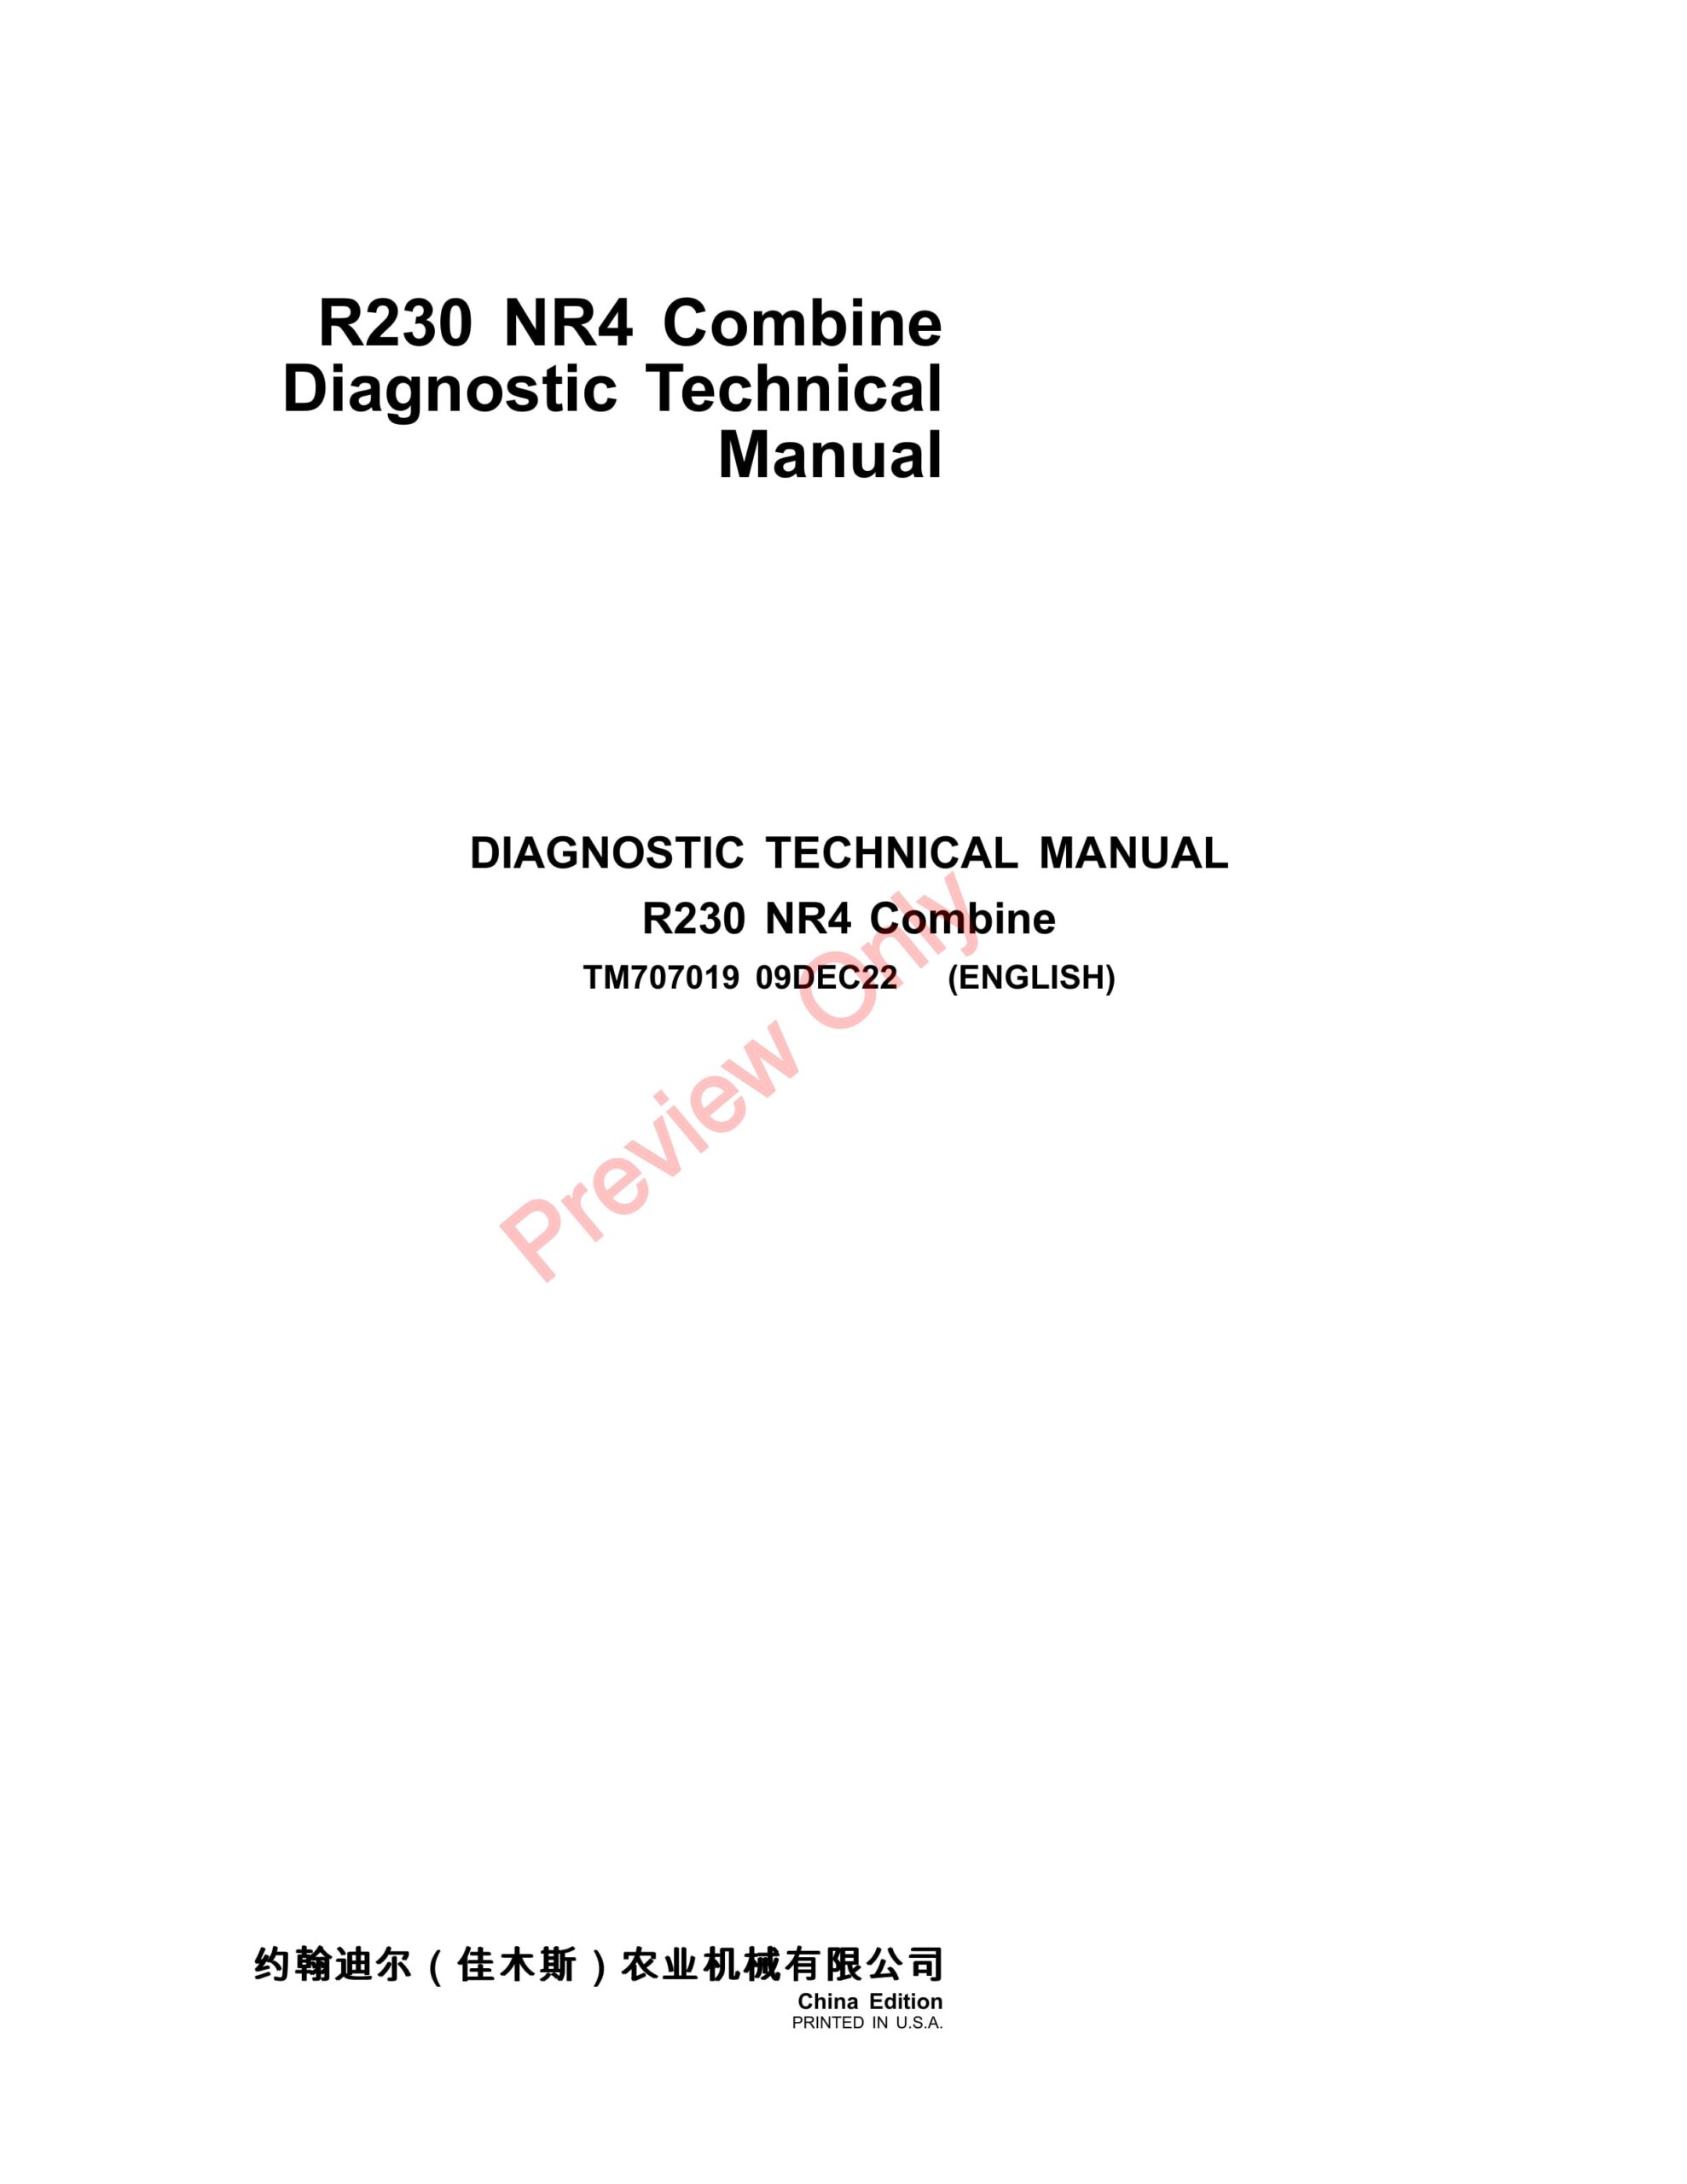 John Deere R230 Combine Diagnostic Technical Manual TM707019 09DEC22-1